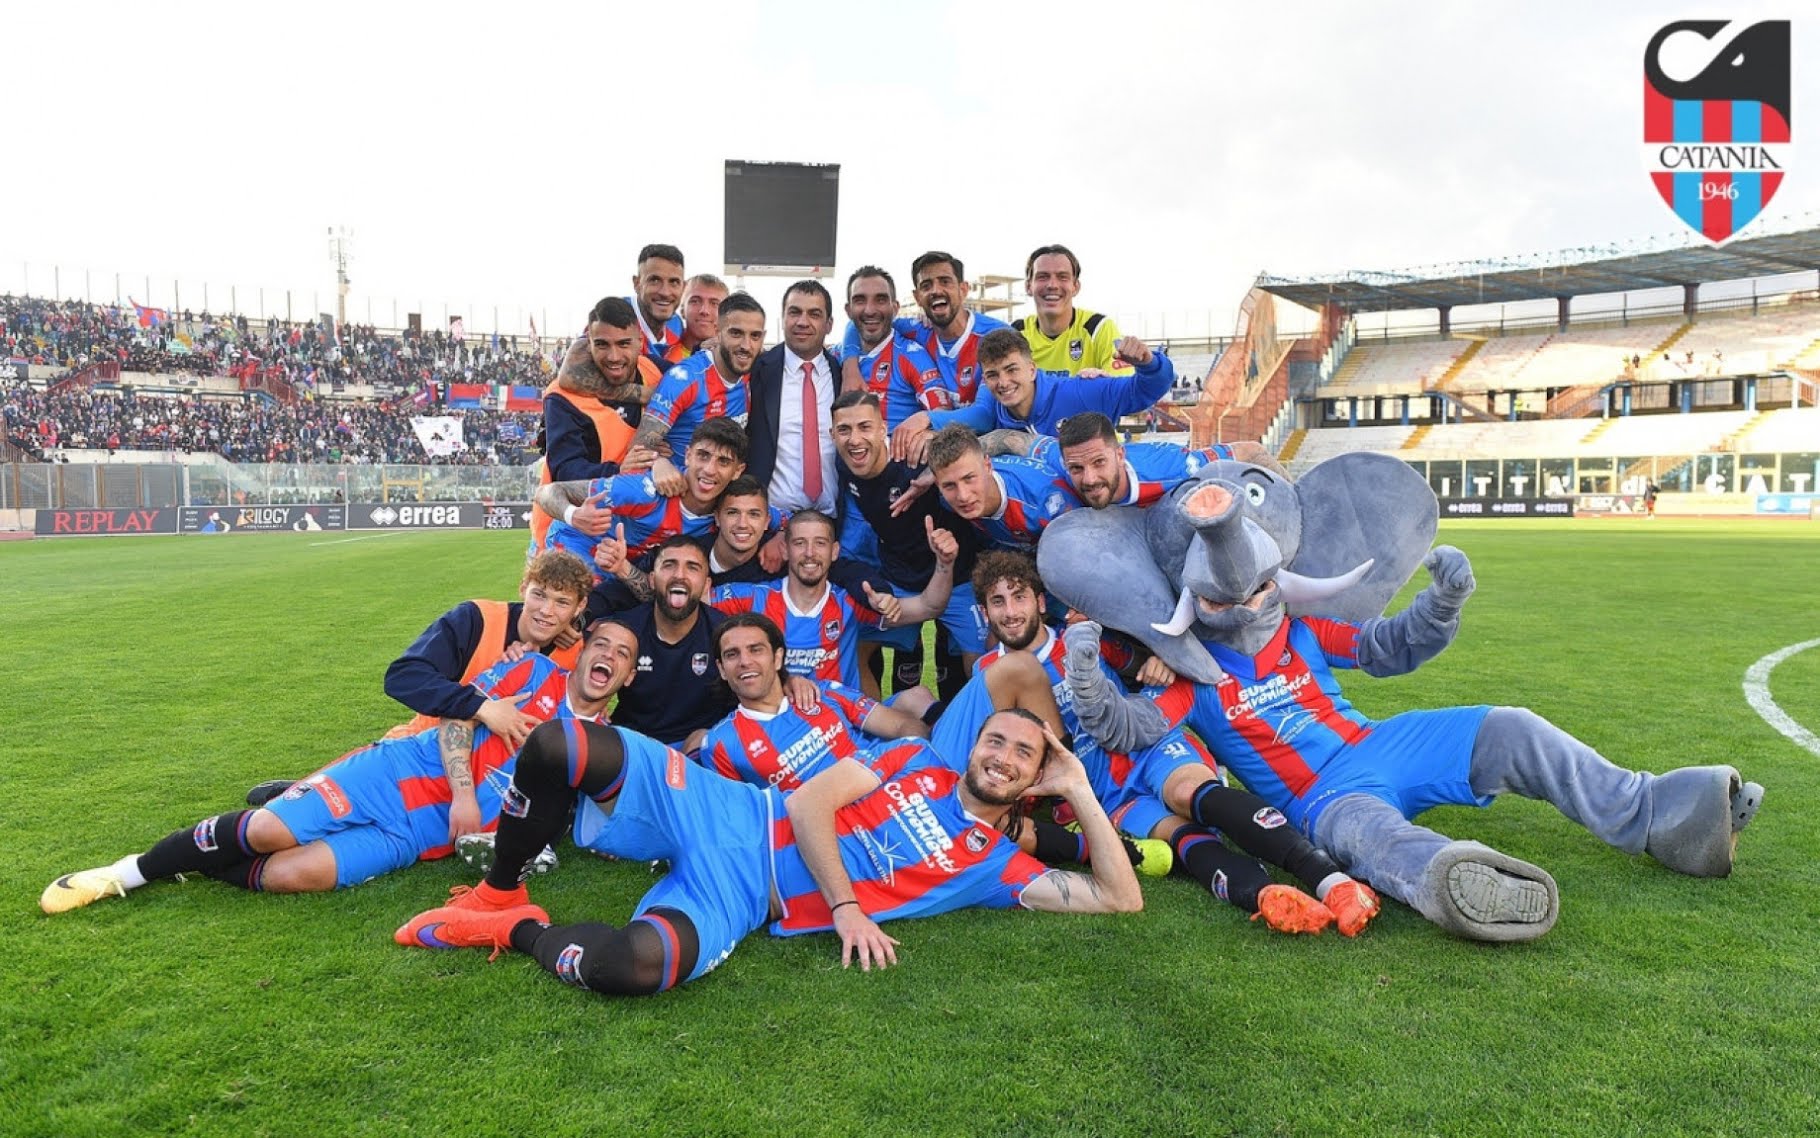 Catania festeggia il ritorno in Serie C: la vittoria sul Canicattì sancisce la promozione